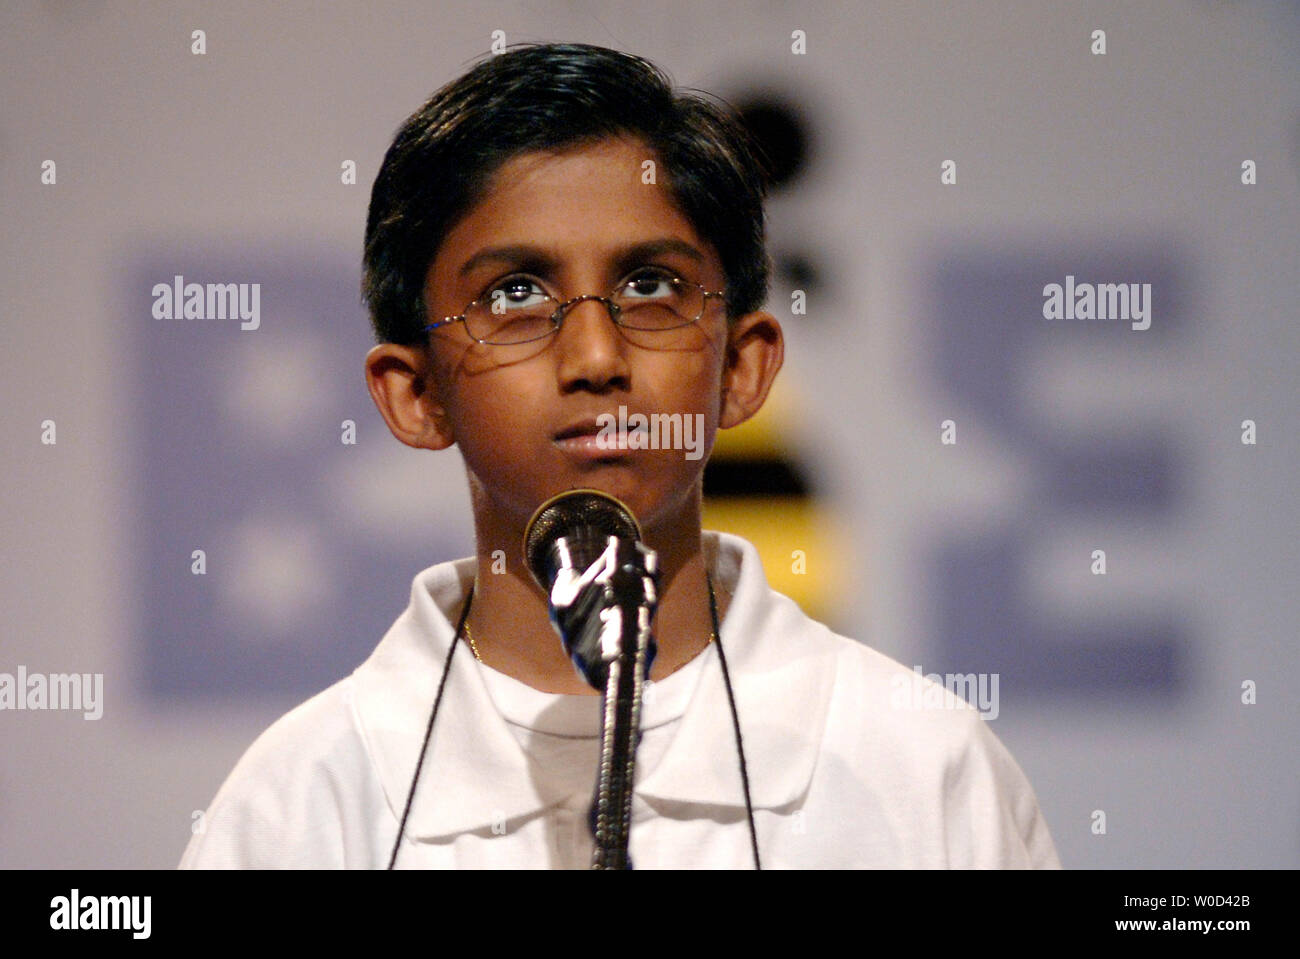 Anjay Ajodha, einem 11 Jahre alten siebten Sortierer von Pearland, Texas, schaut an die Decke, als er sich an seinem Wort, während der 2006 Scripps National Spelling Bee in Washington am 1. Juni 2006 konzentriert. (UPI Foto/Kevin Dietsch) Stockfoto